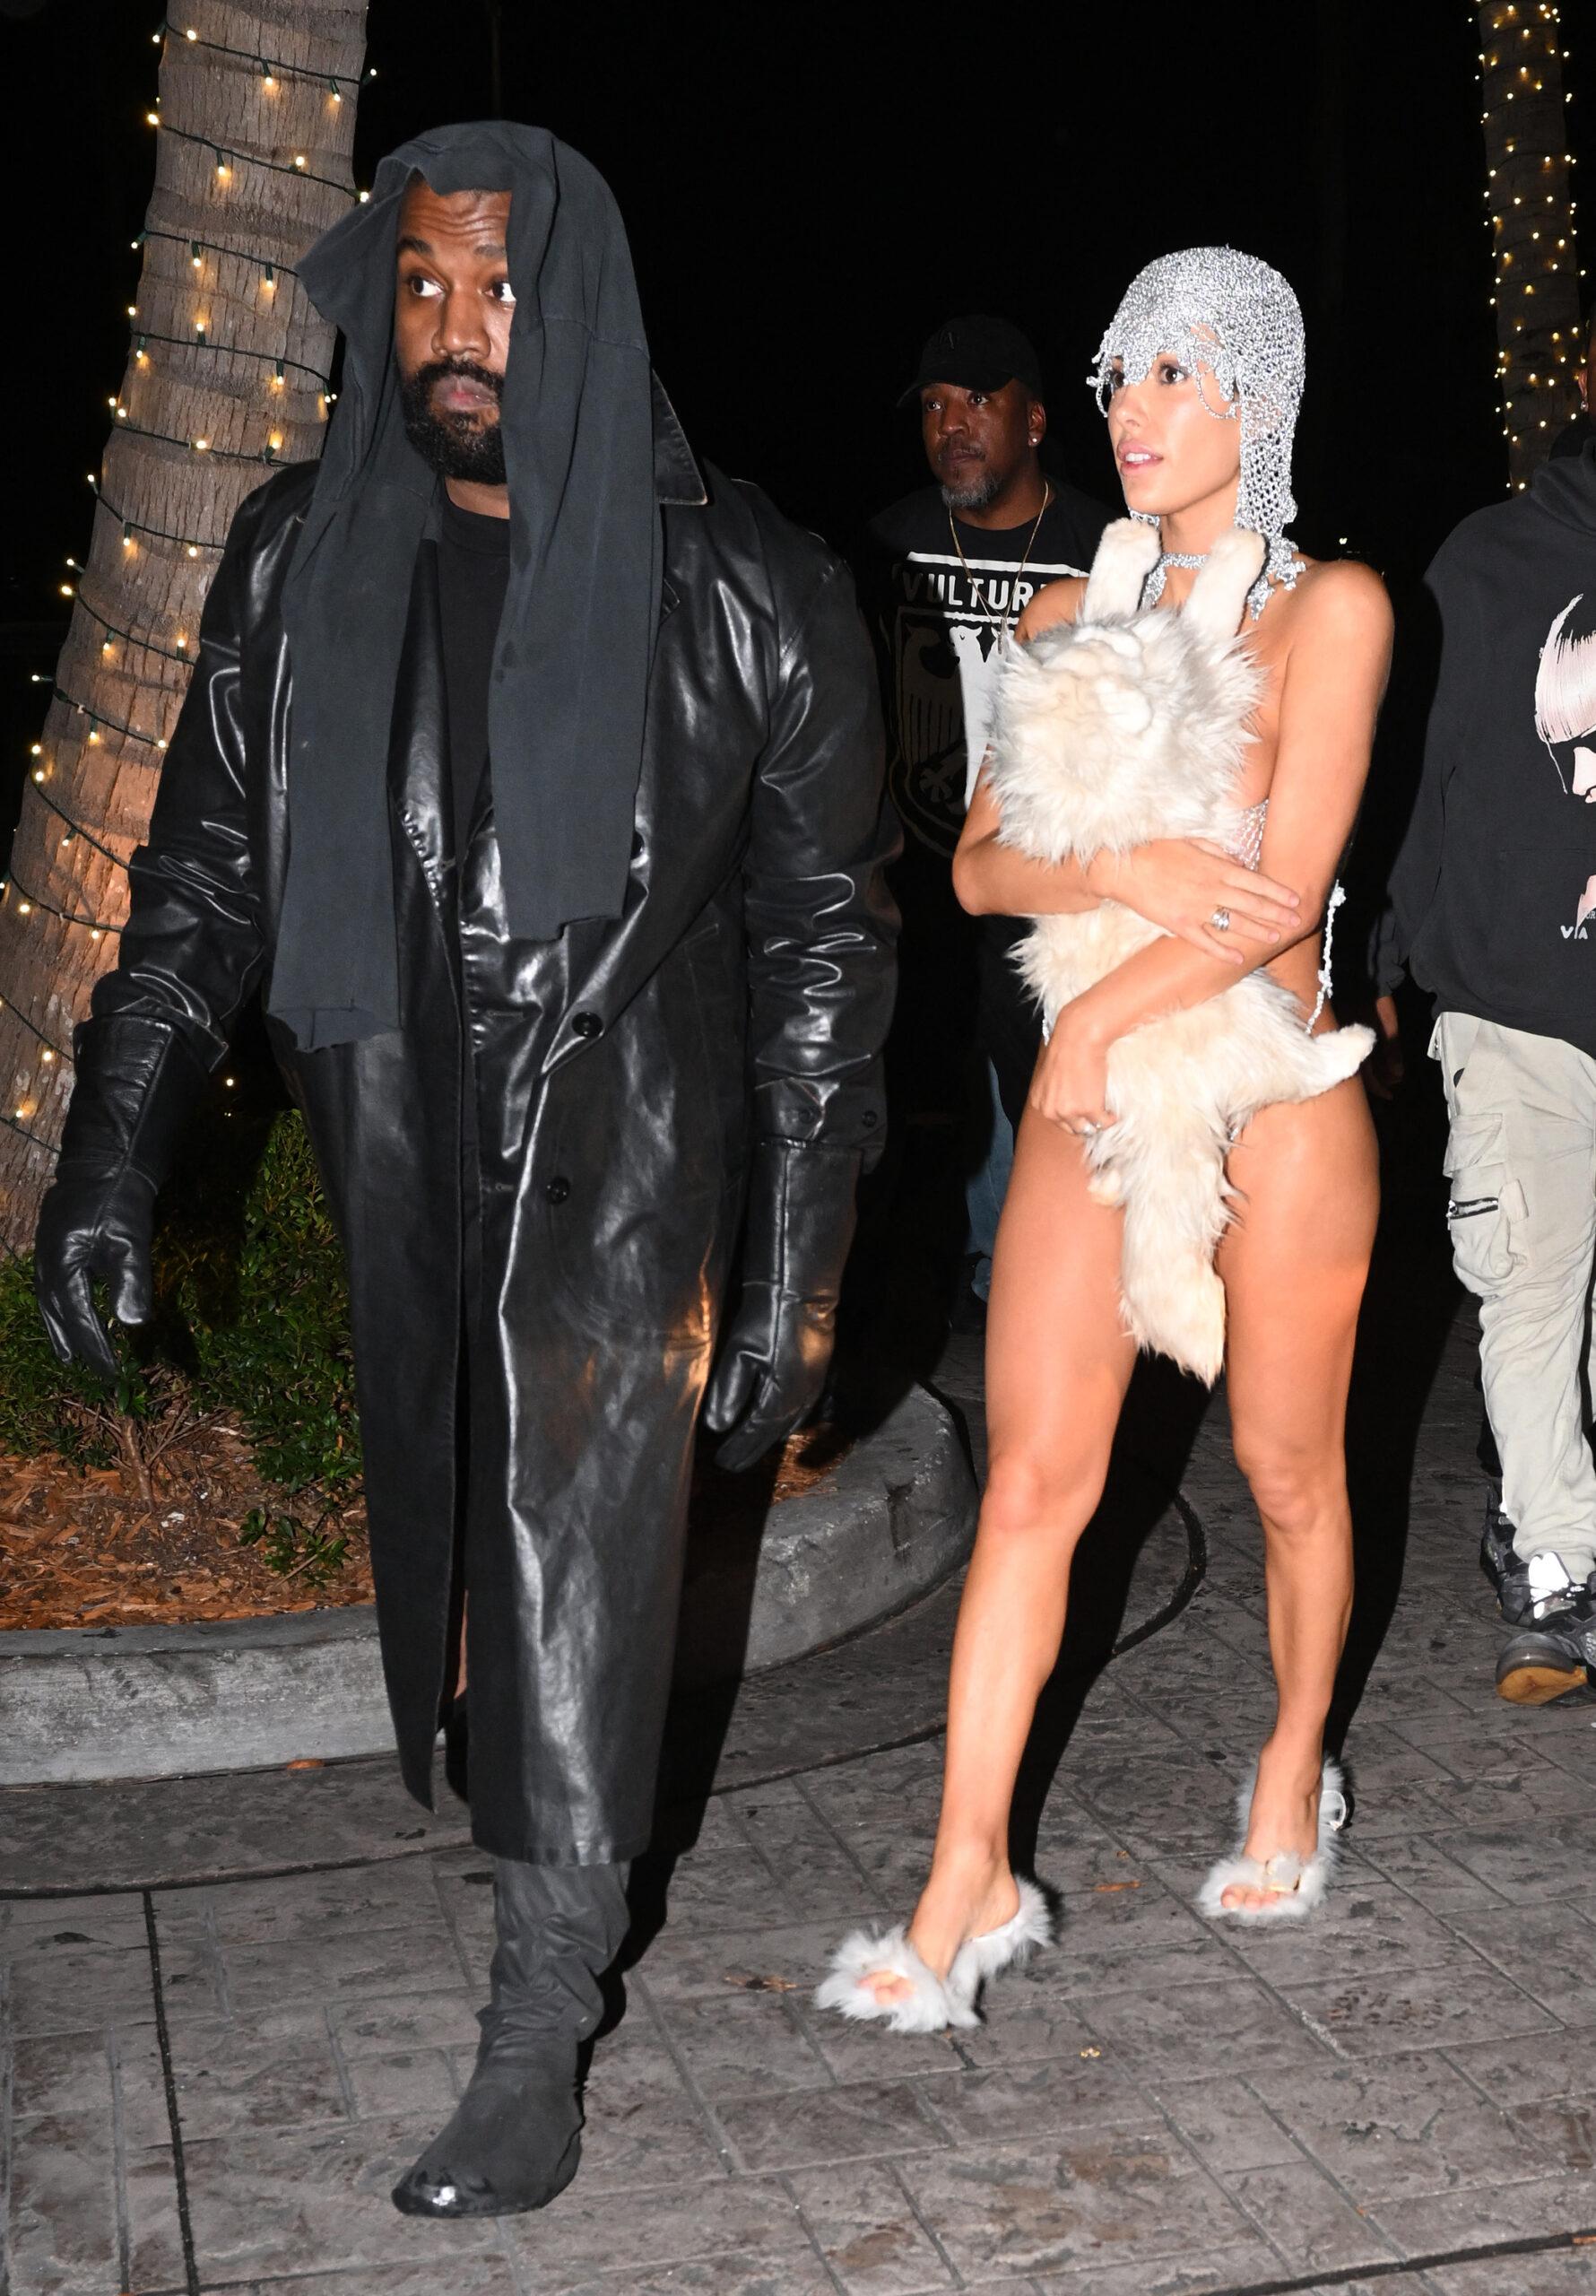 A esposa de Kanye West, Bianca Censori, está quase nua em um conjunto de cordas de prata para menores, cobrindo apenas um gato de pelúcia enquanto a dupla causa agitação na boate LIV de Miami.